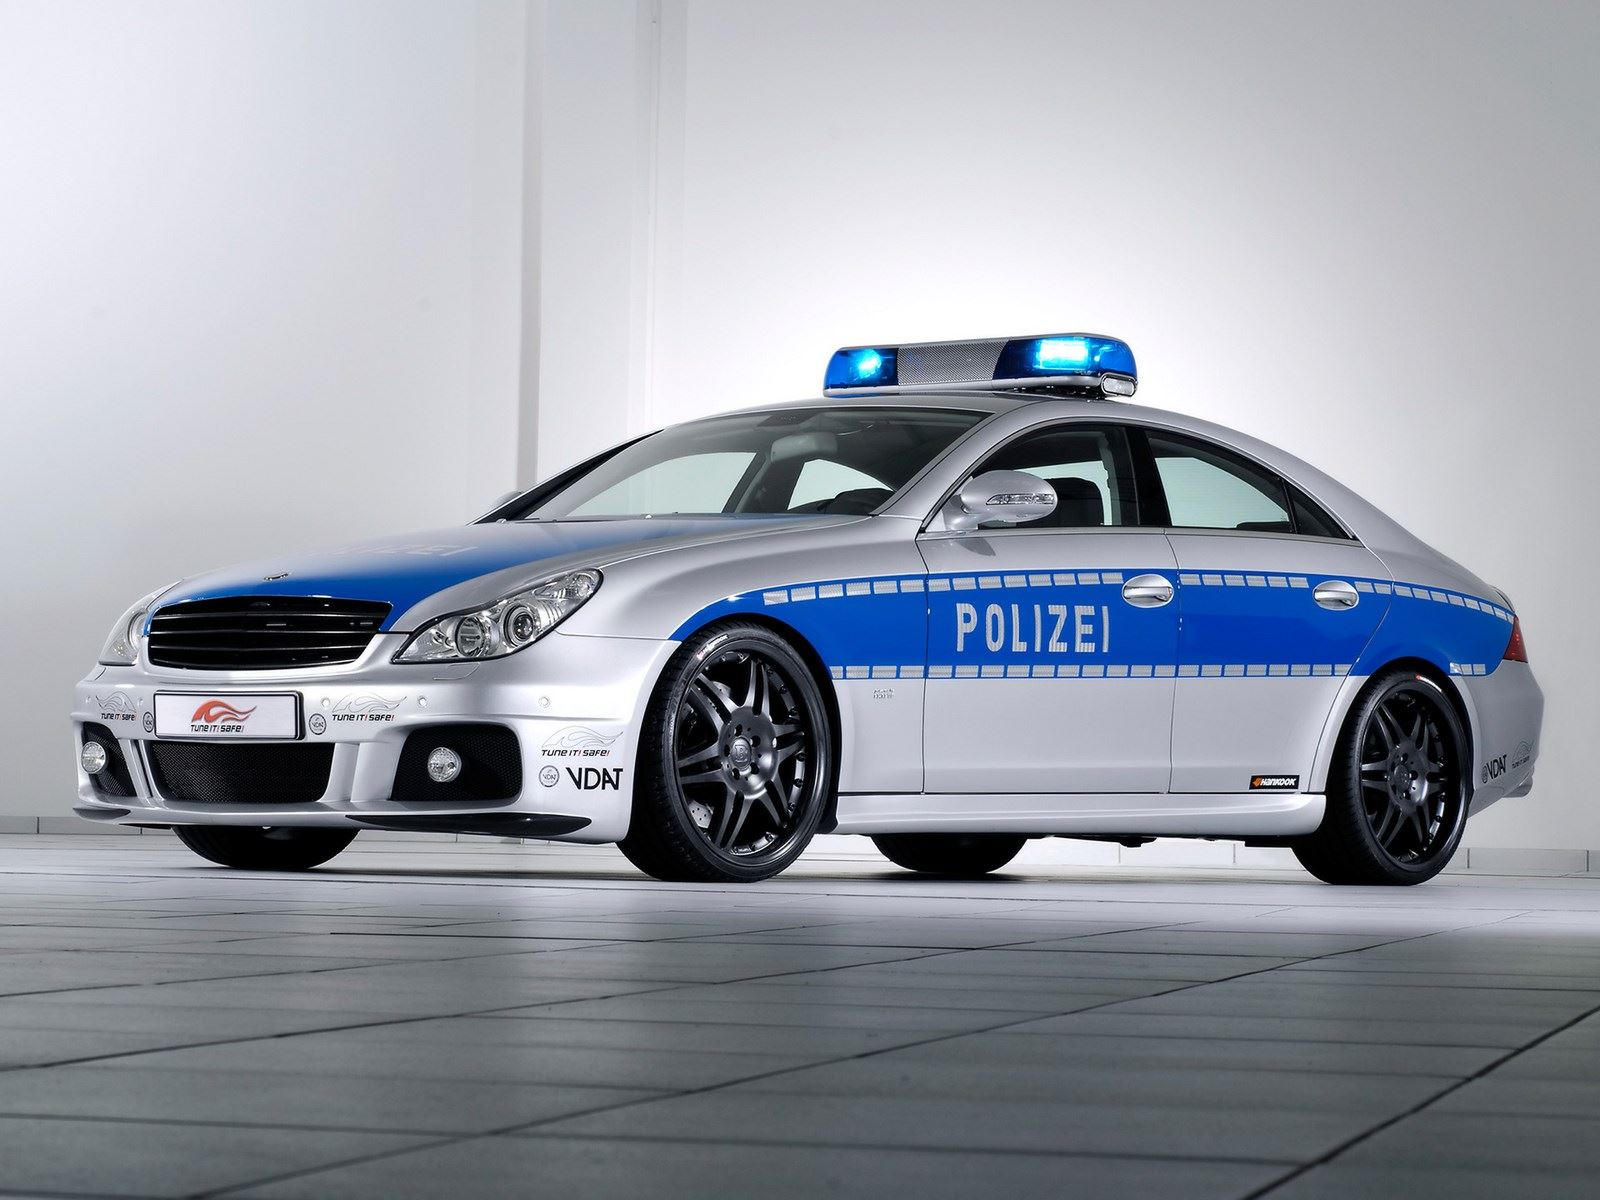 "بالصور" أكثر 10 سيارات شرطة تميزا حول العالم 10